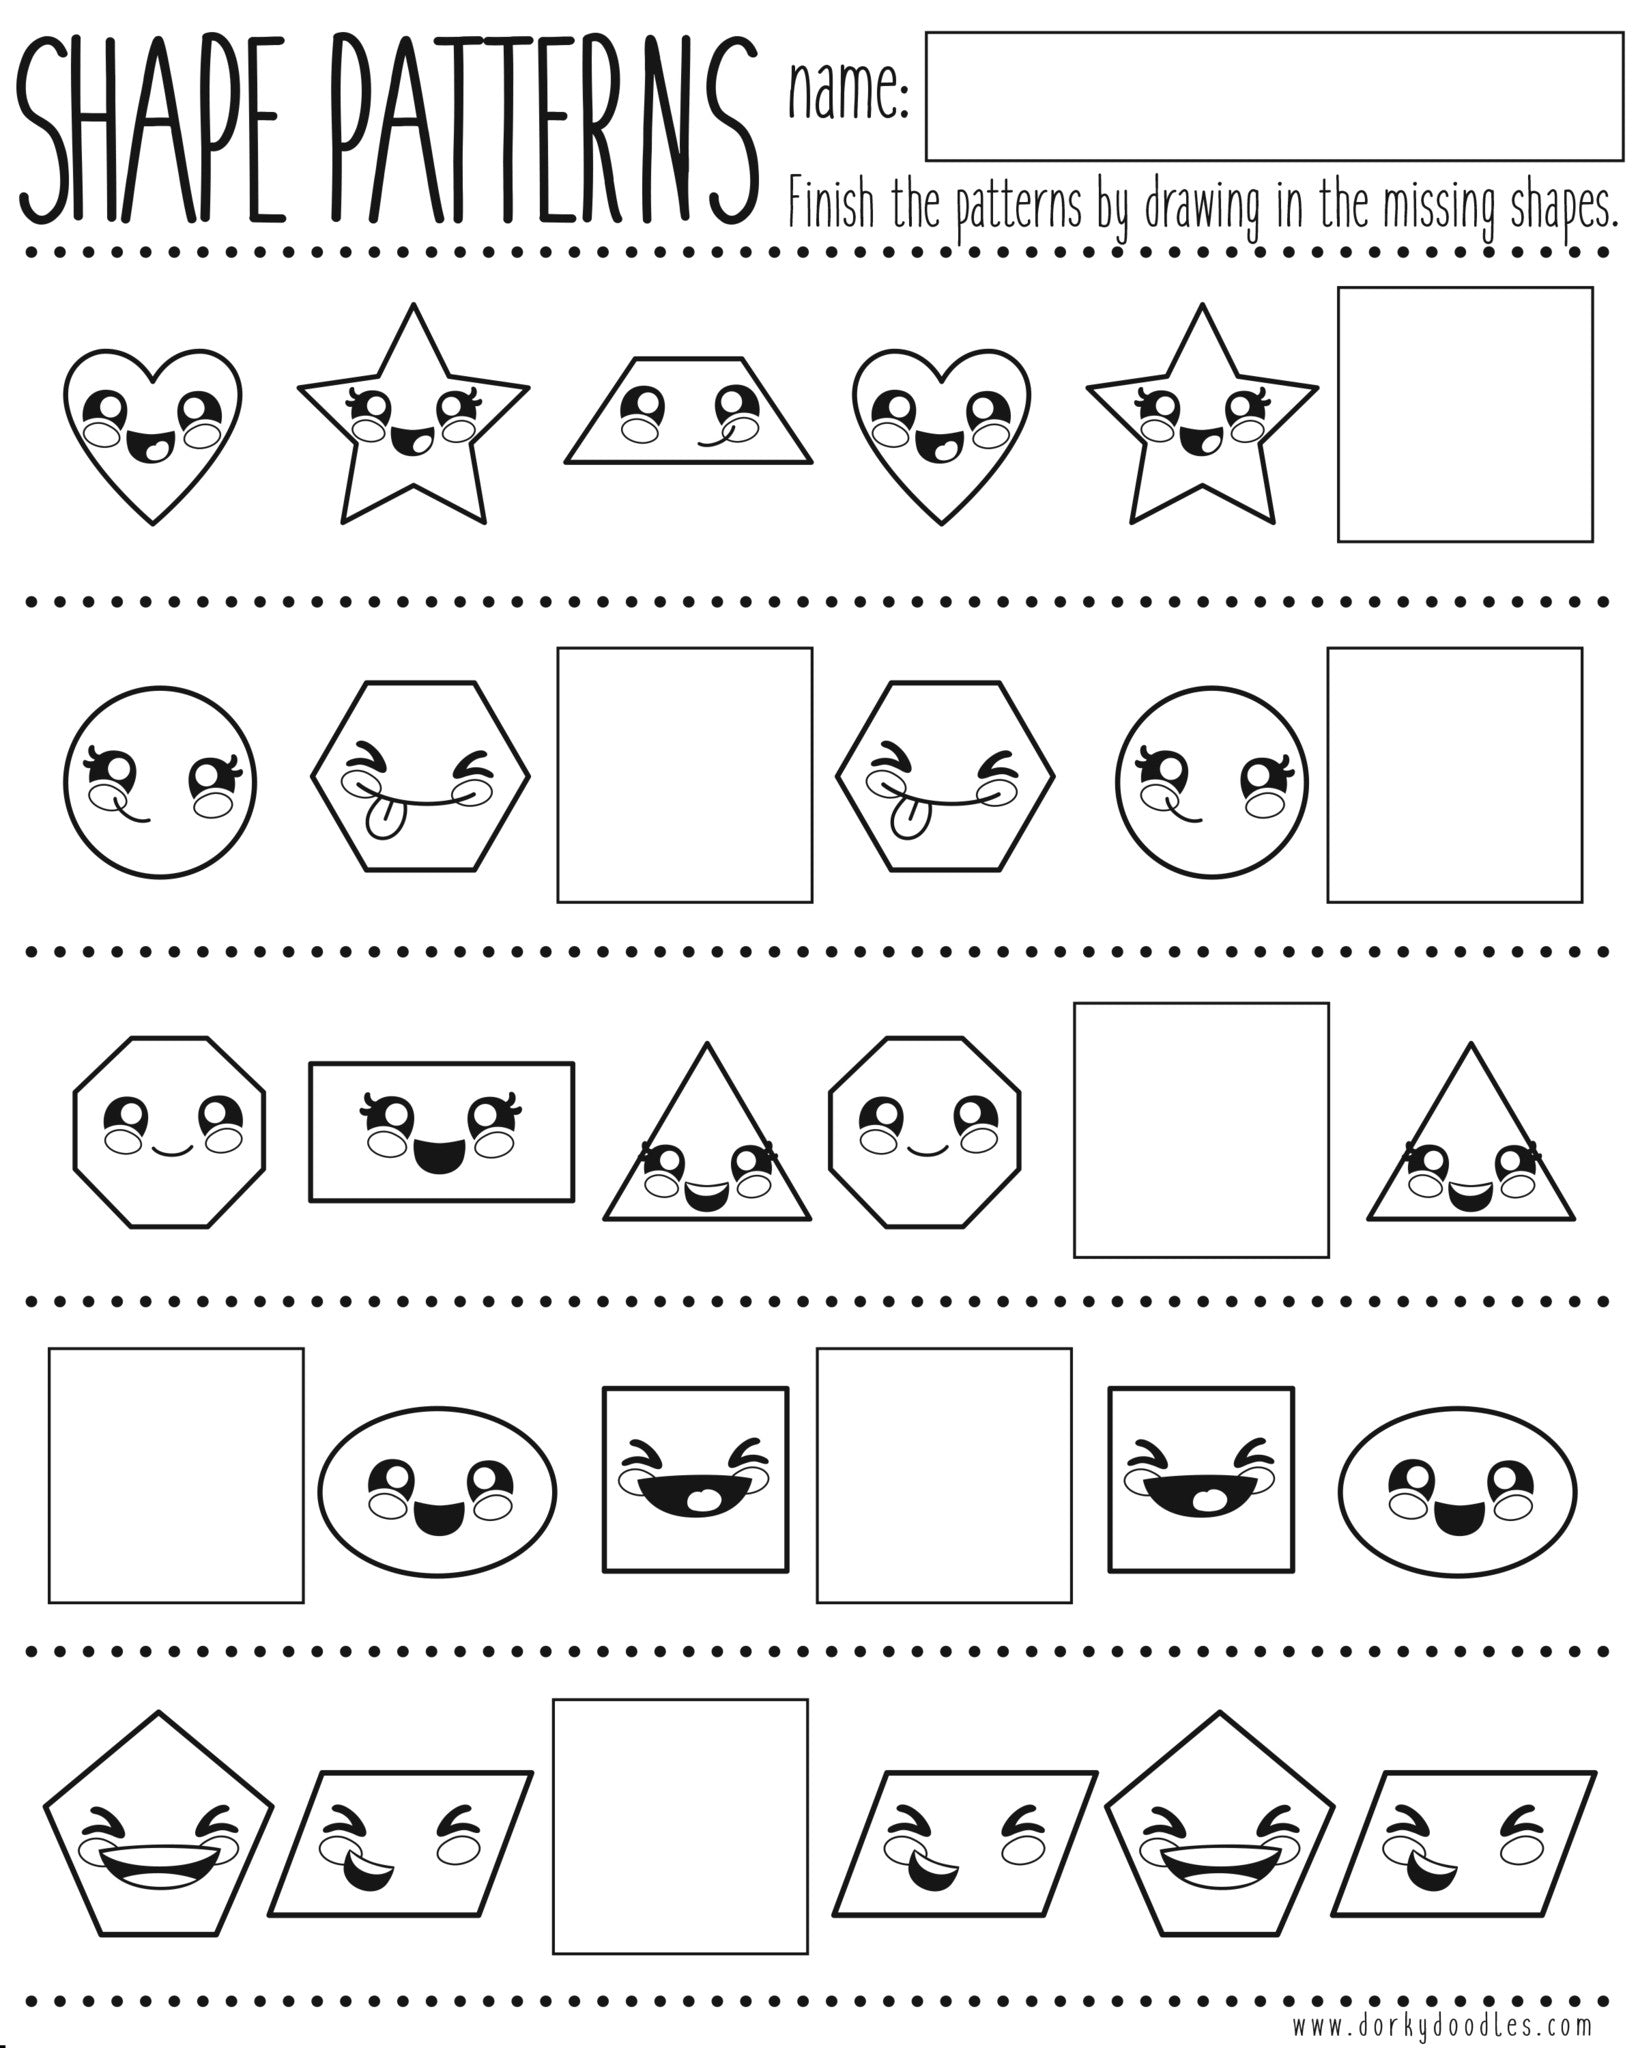 shapes-and-pattern-practice-printable-worksheet-dorky-doodles